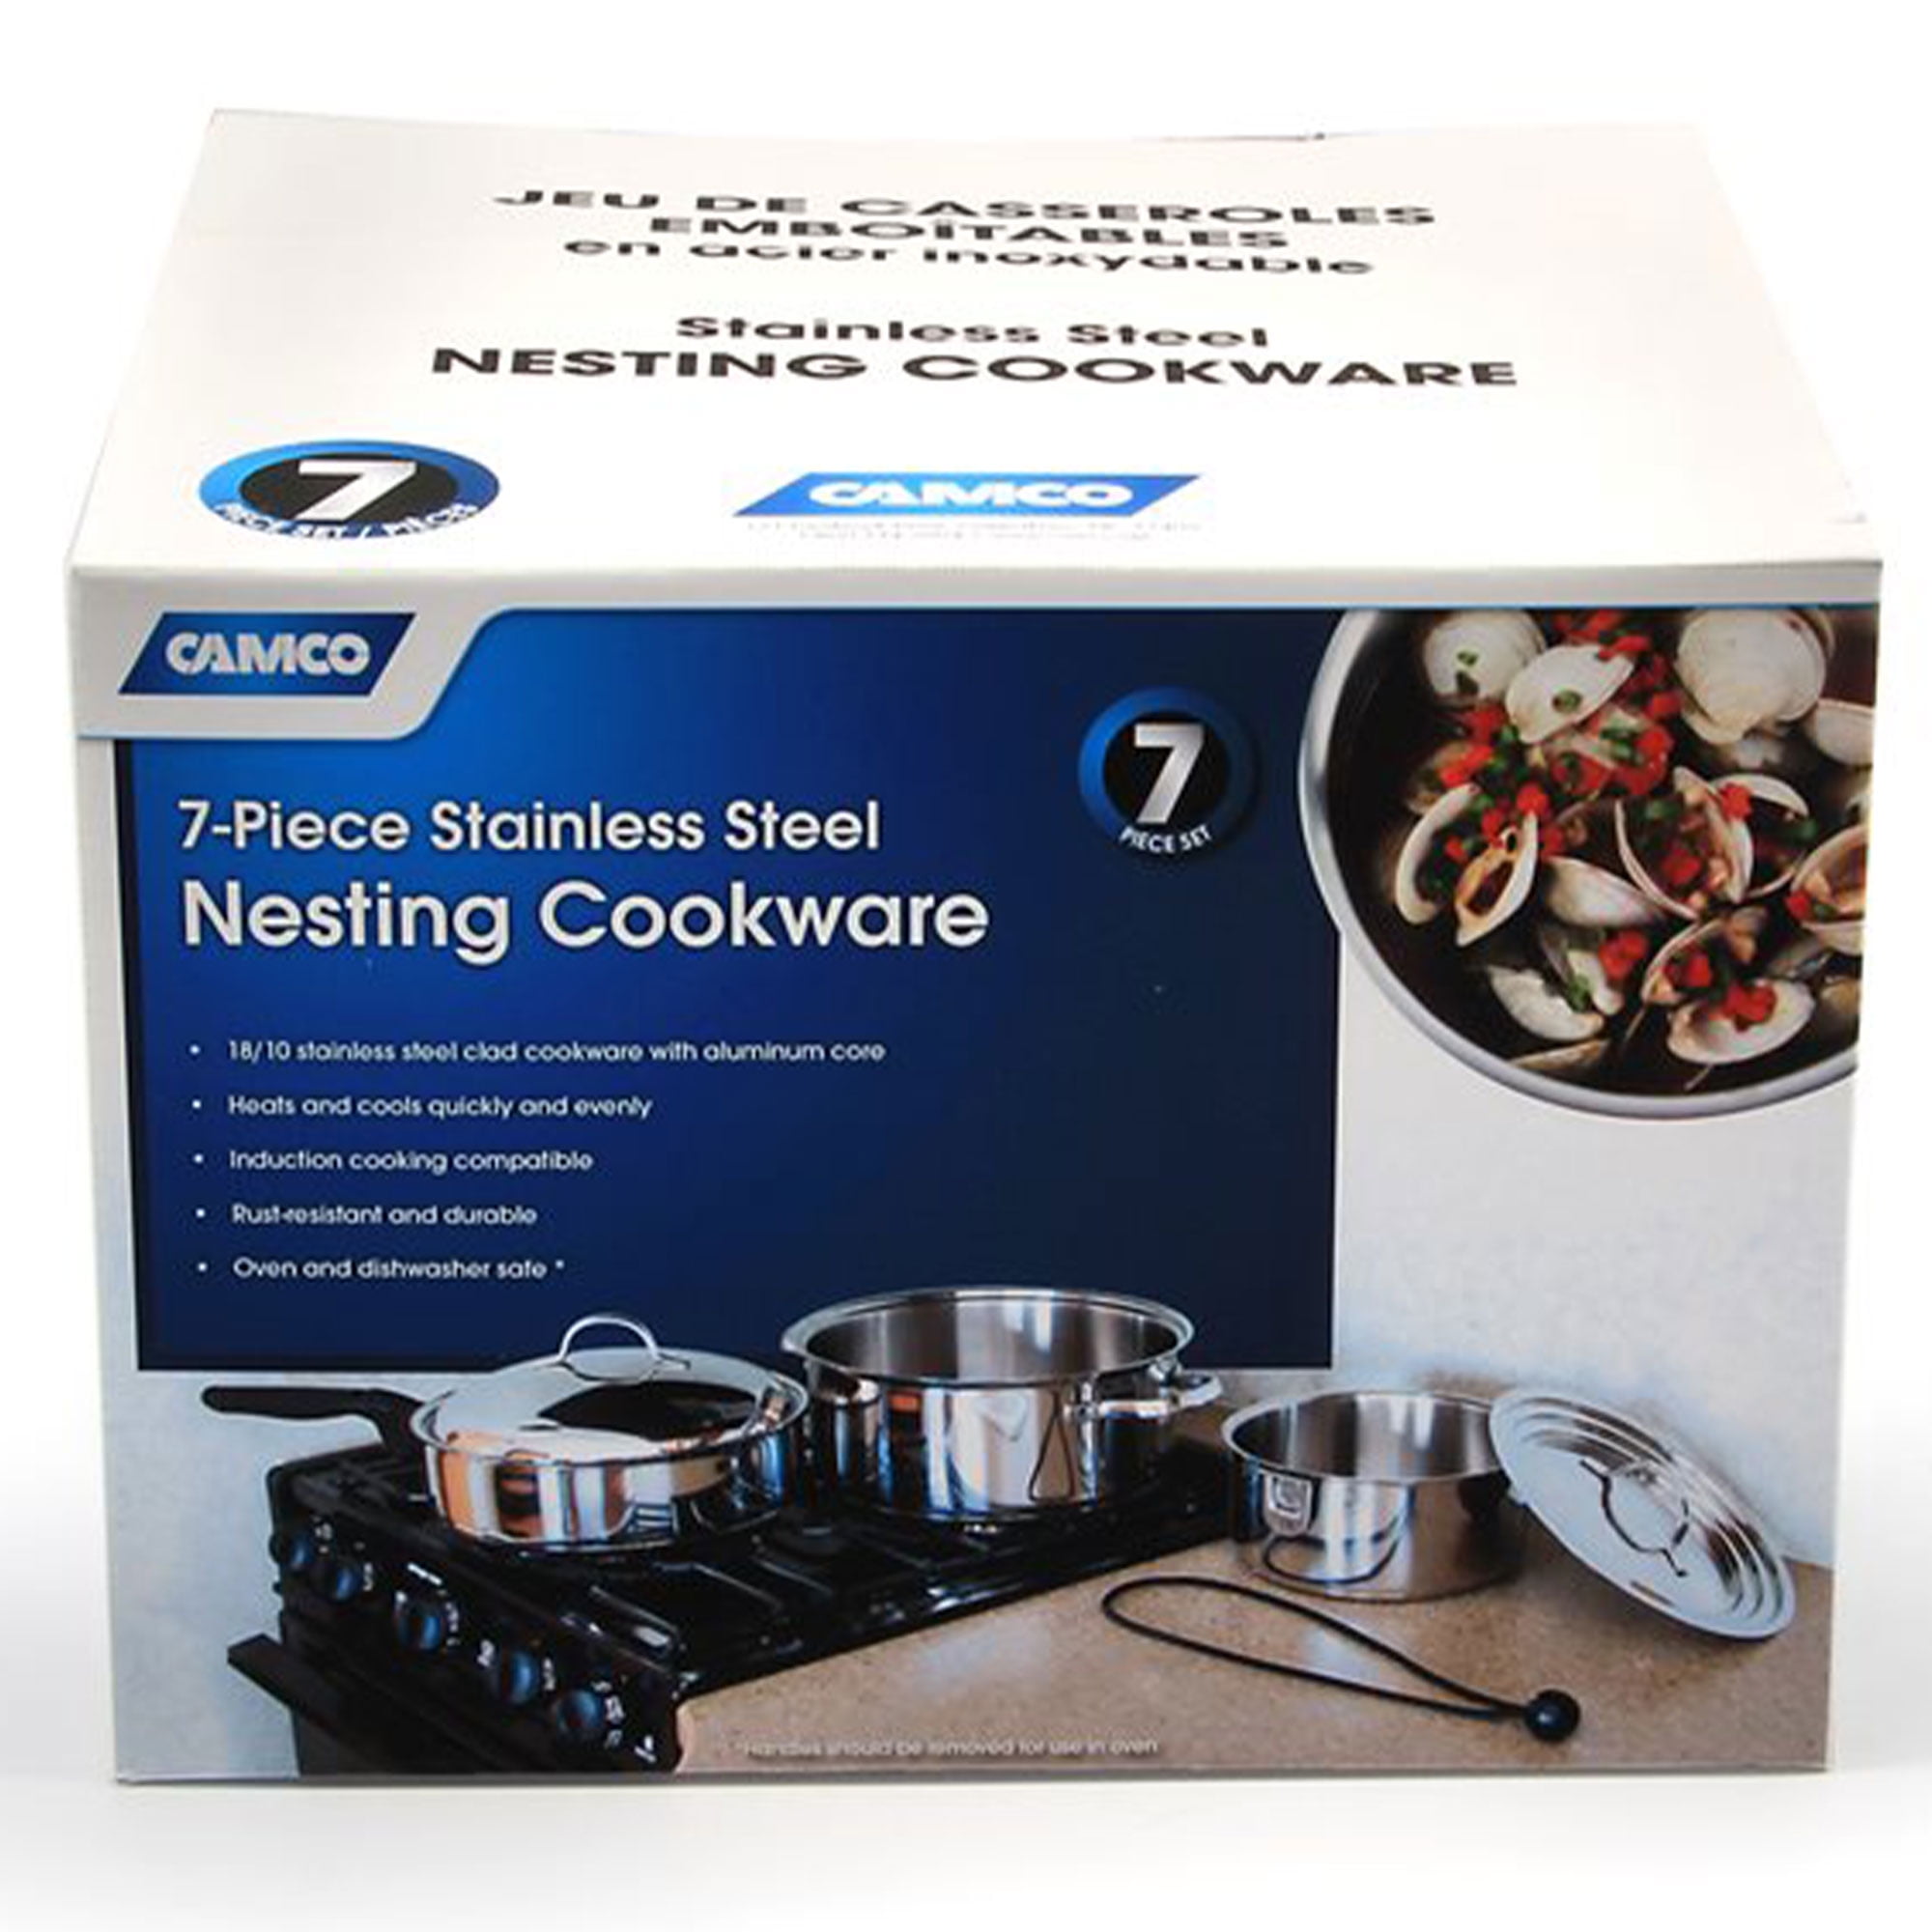  Camco Nesting Cookware Set